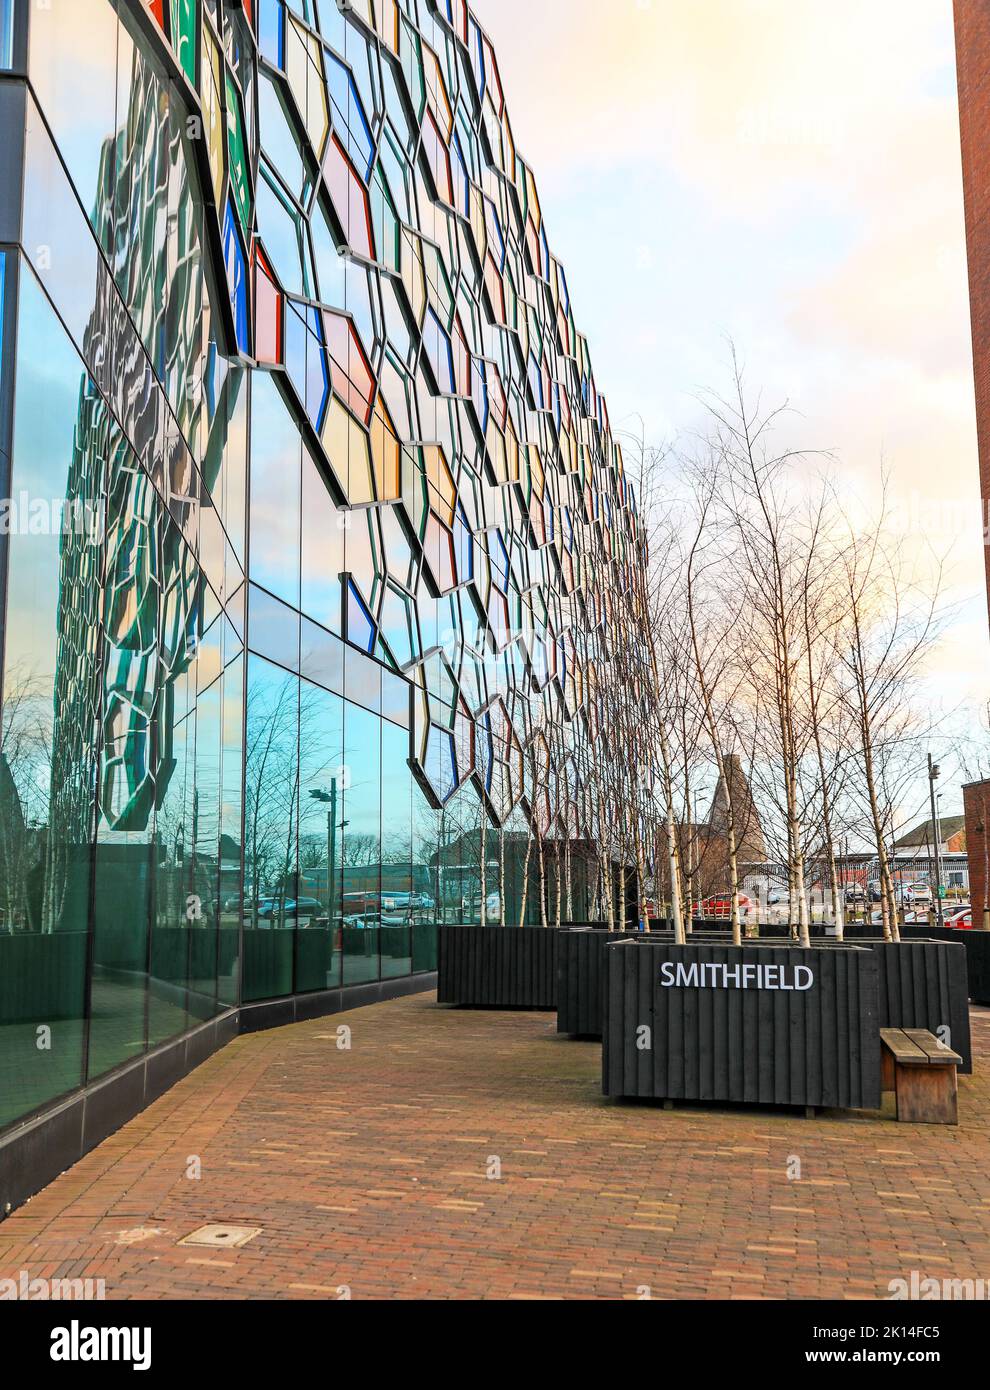 Ein Smithfield-Bürogebäude, entworfen von RHWL Architects, Hanley, Stoke on Trent, Staffordshire, Mitarbeitern, England, Großbritannien Stockfoto